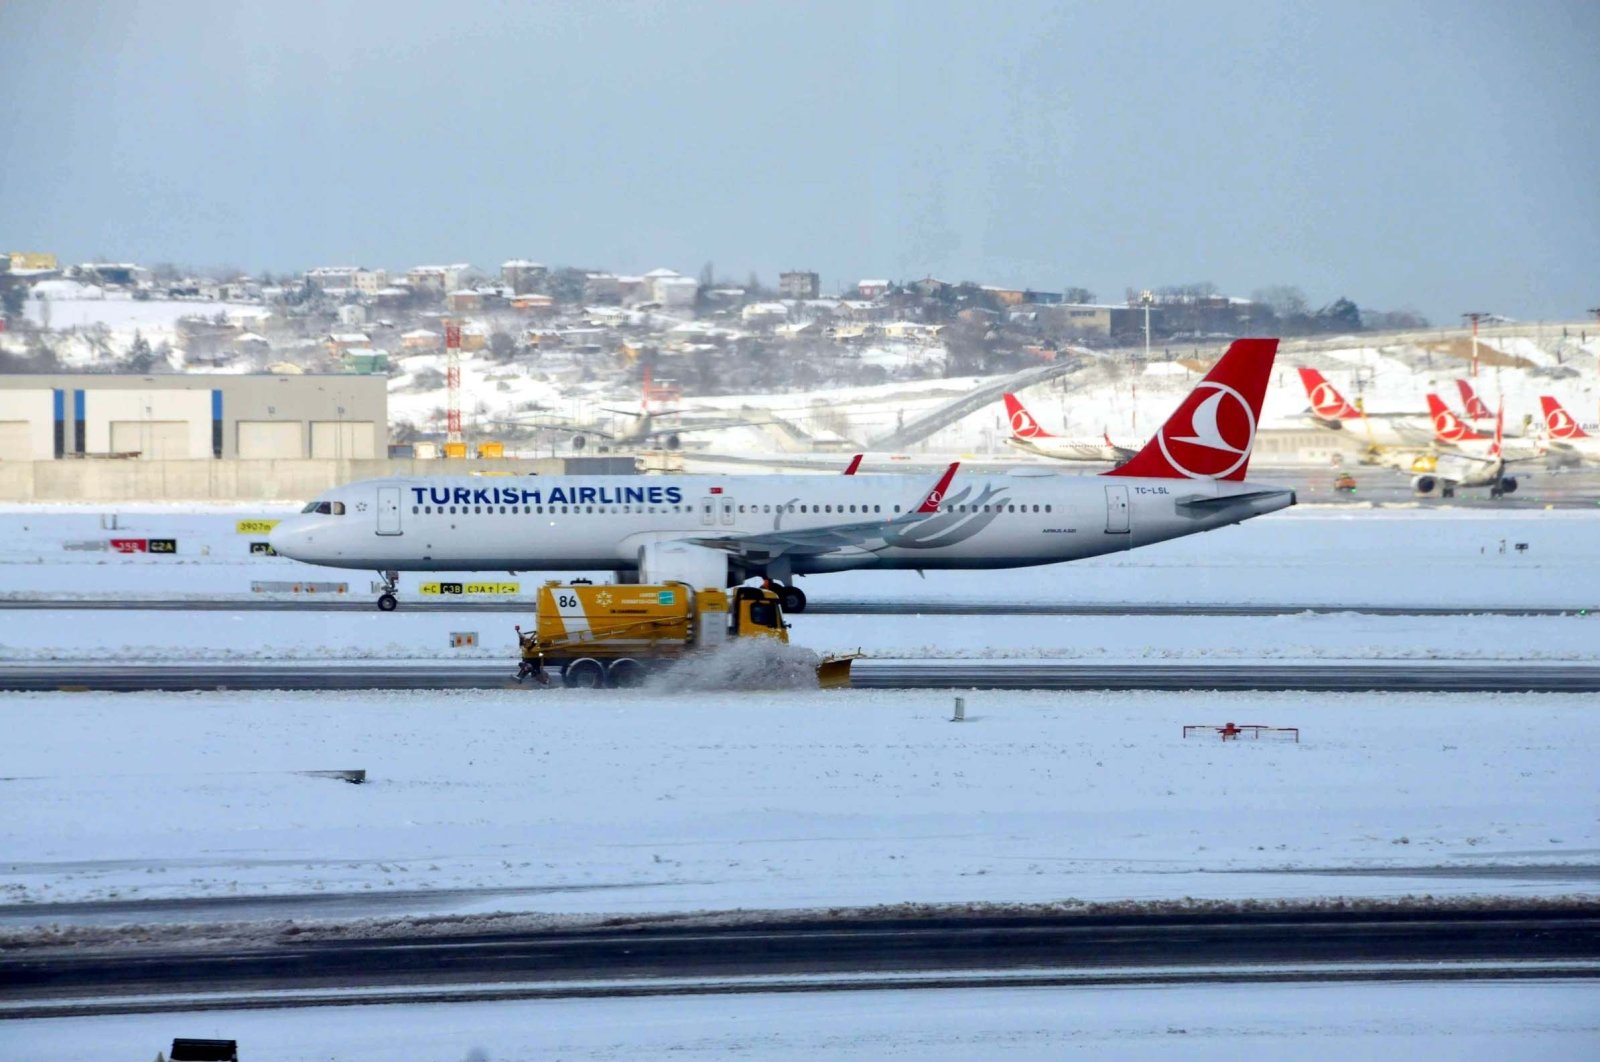 KAMU, AnadoluJet membatalkan penerbangan Istanbul karena badai salju yang diperkirakan